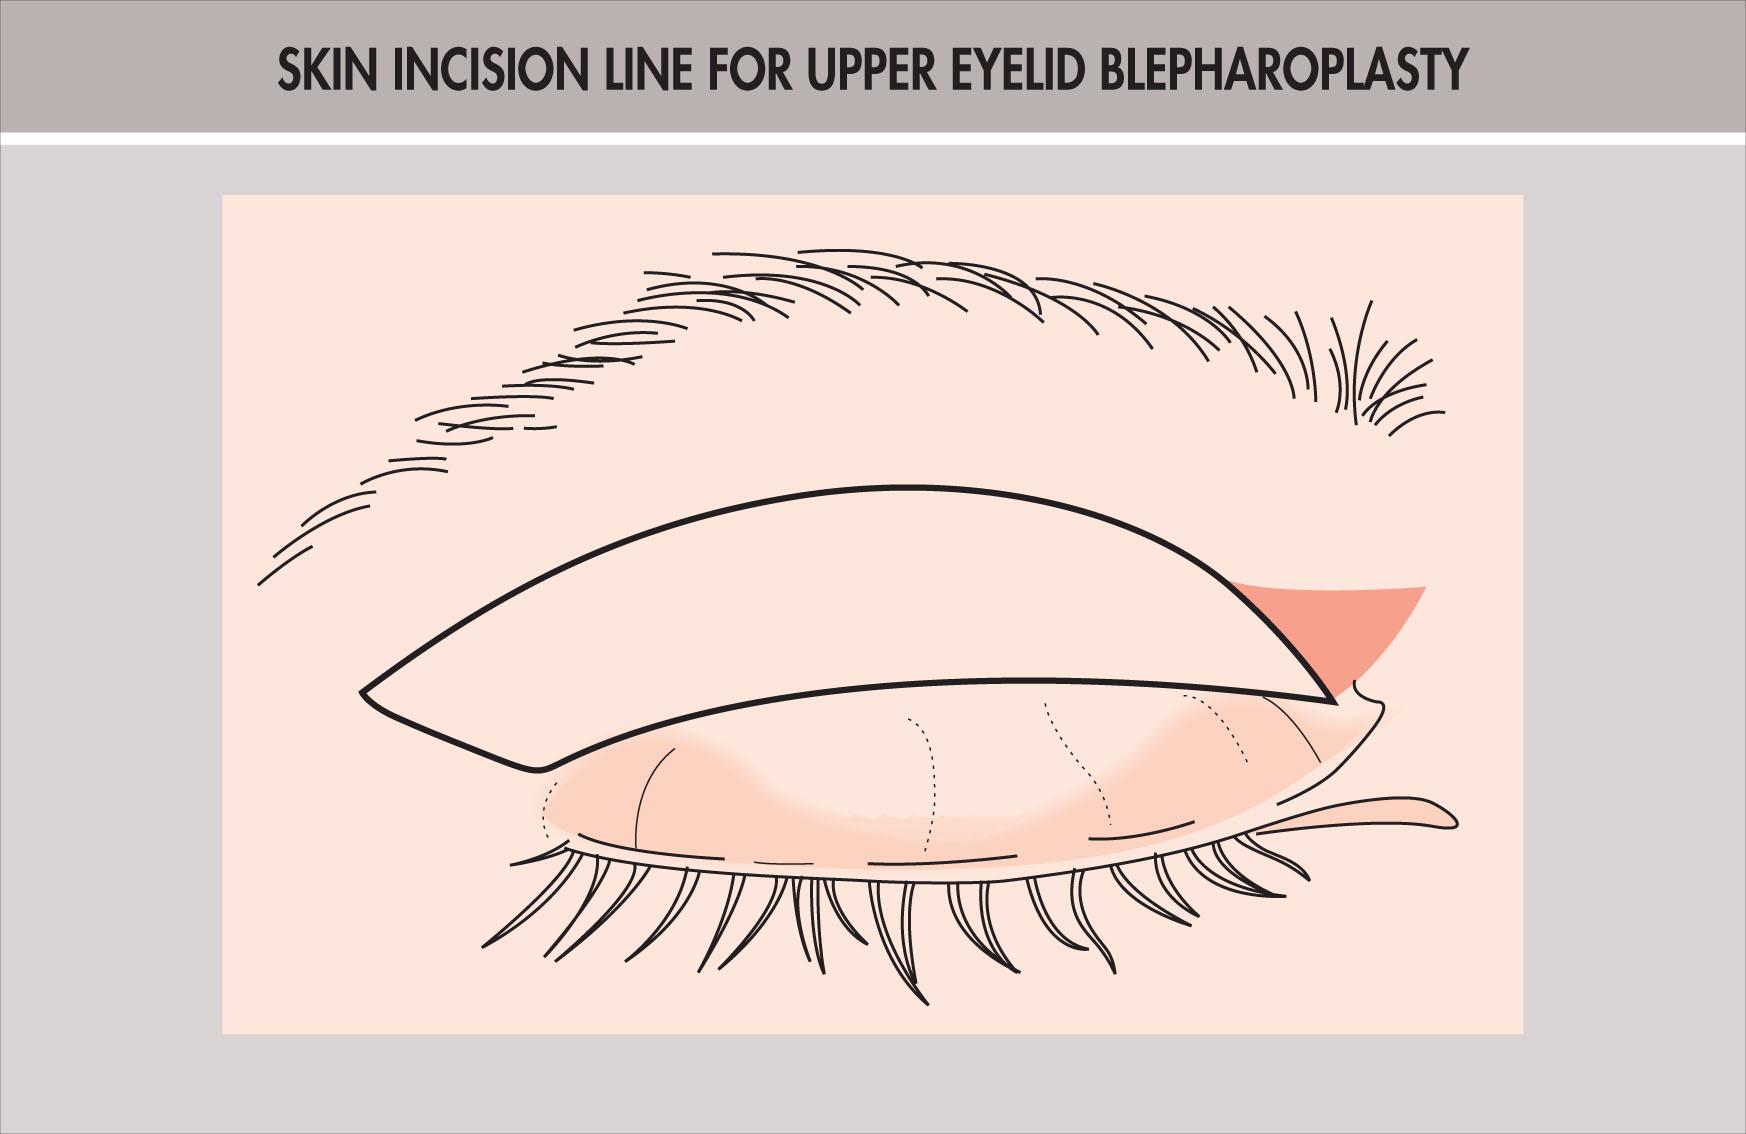 Fig. 12.15.5, Typical Skin Incision Line Used for Upper Eyelid Blepharoplasty.